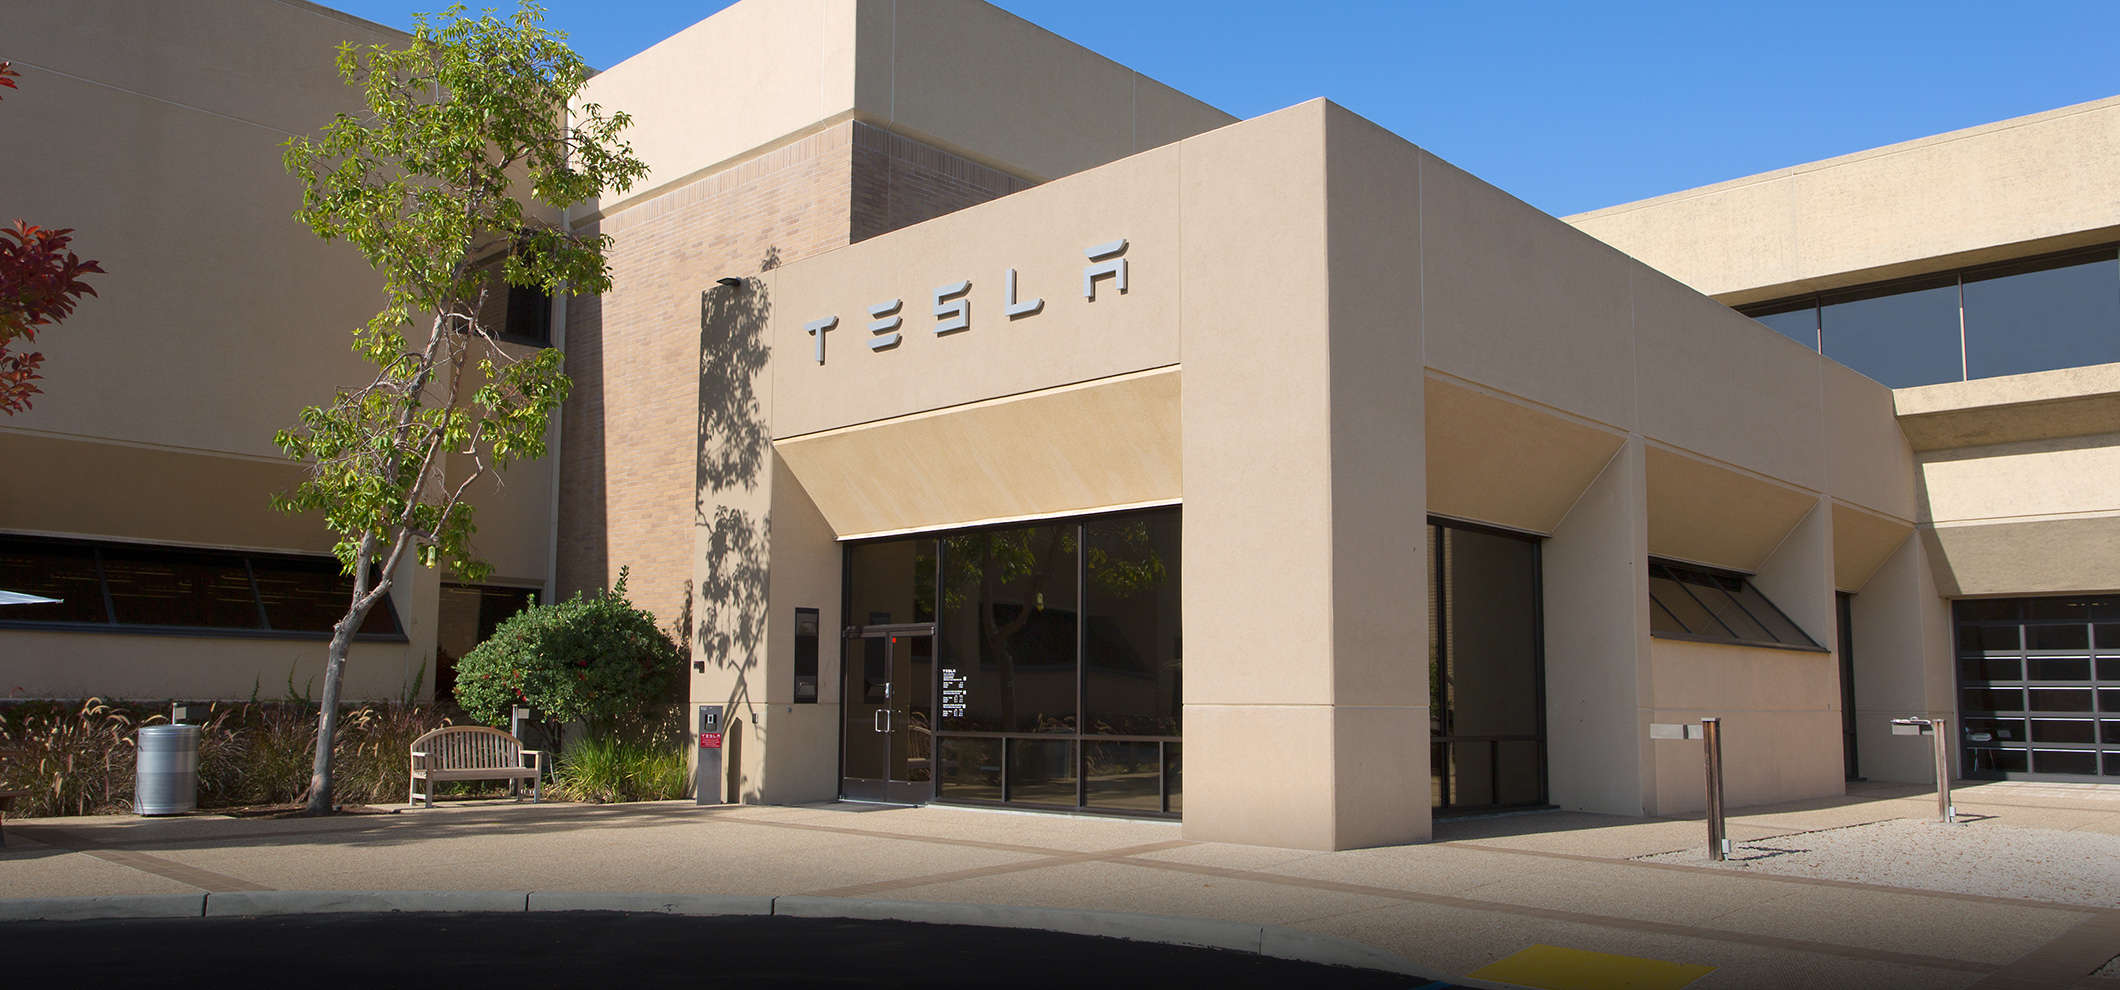 Из Калифорнии в Техас: Tesla переносит свою штаб-квартиру